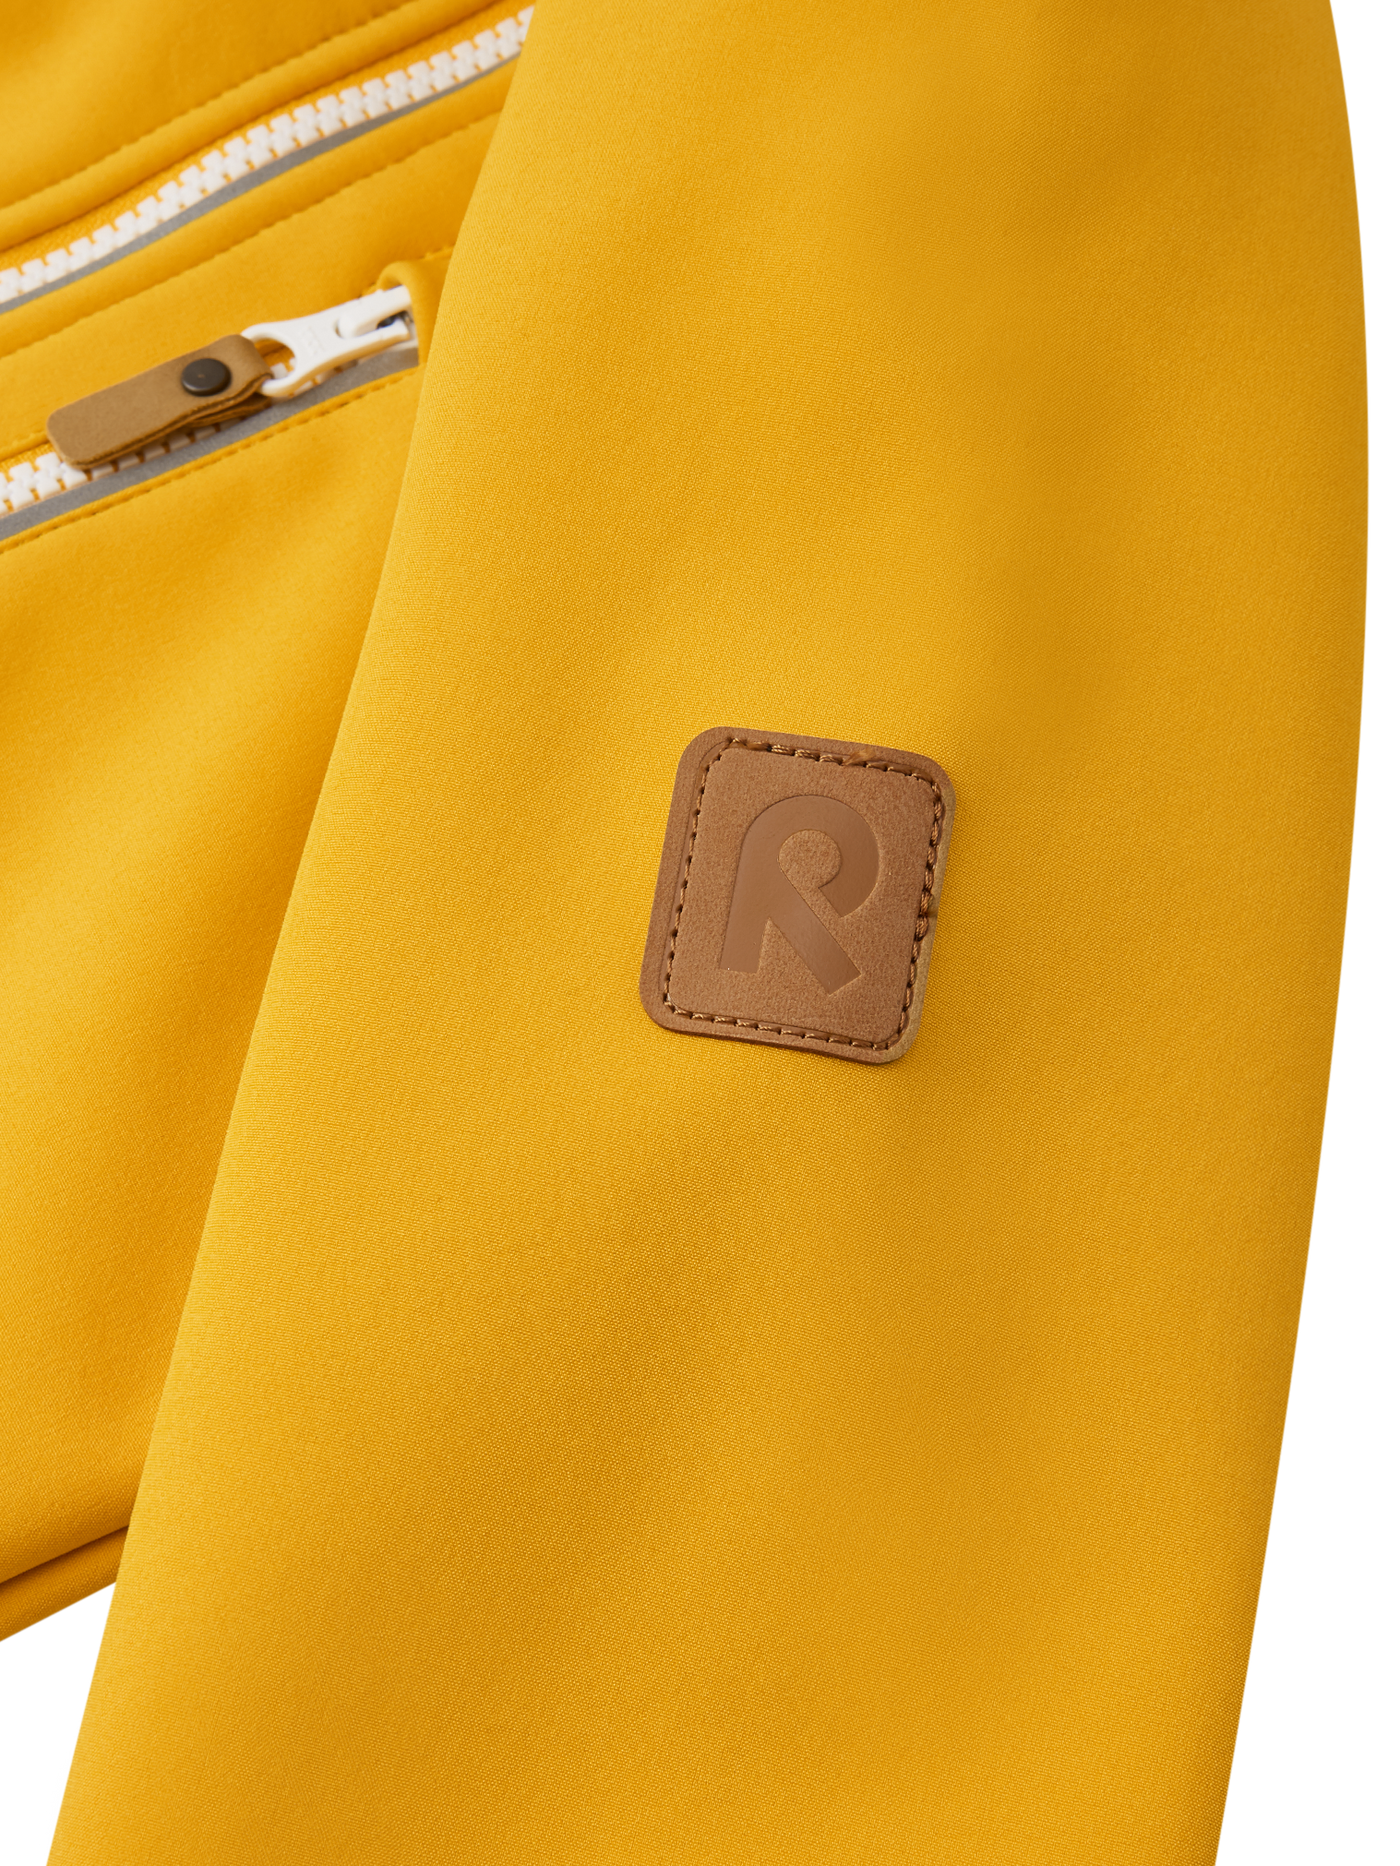 Reima Vantti lasten softshell takki värissä Chanterelle lähikuva hihan R-logosta